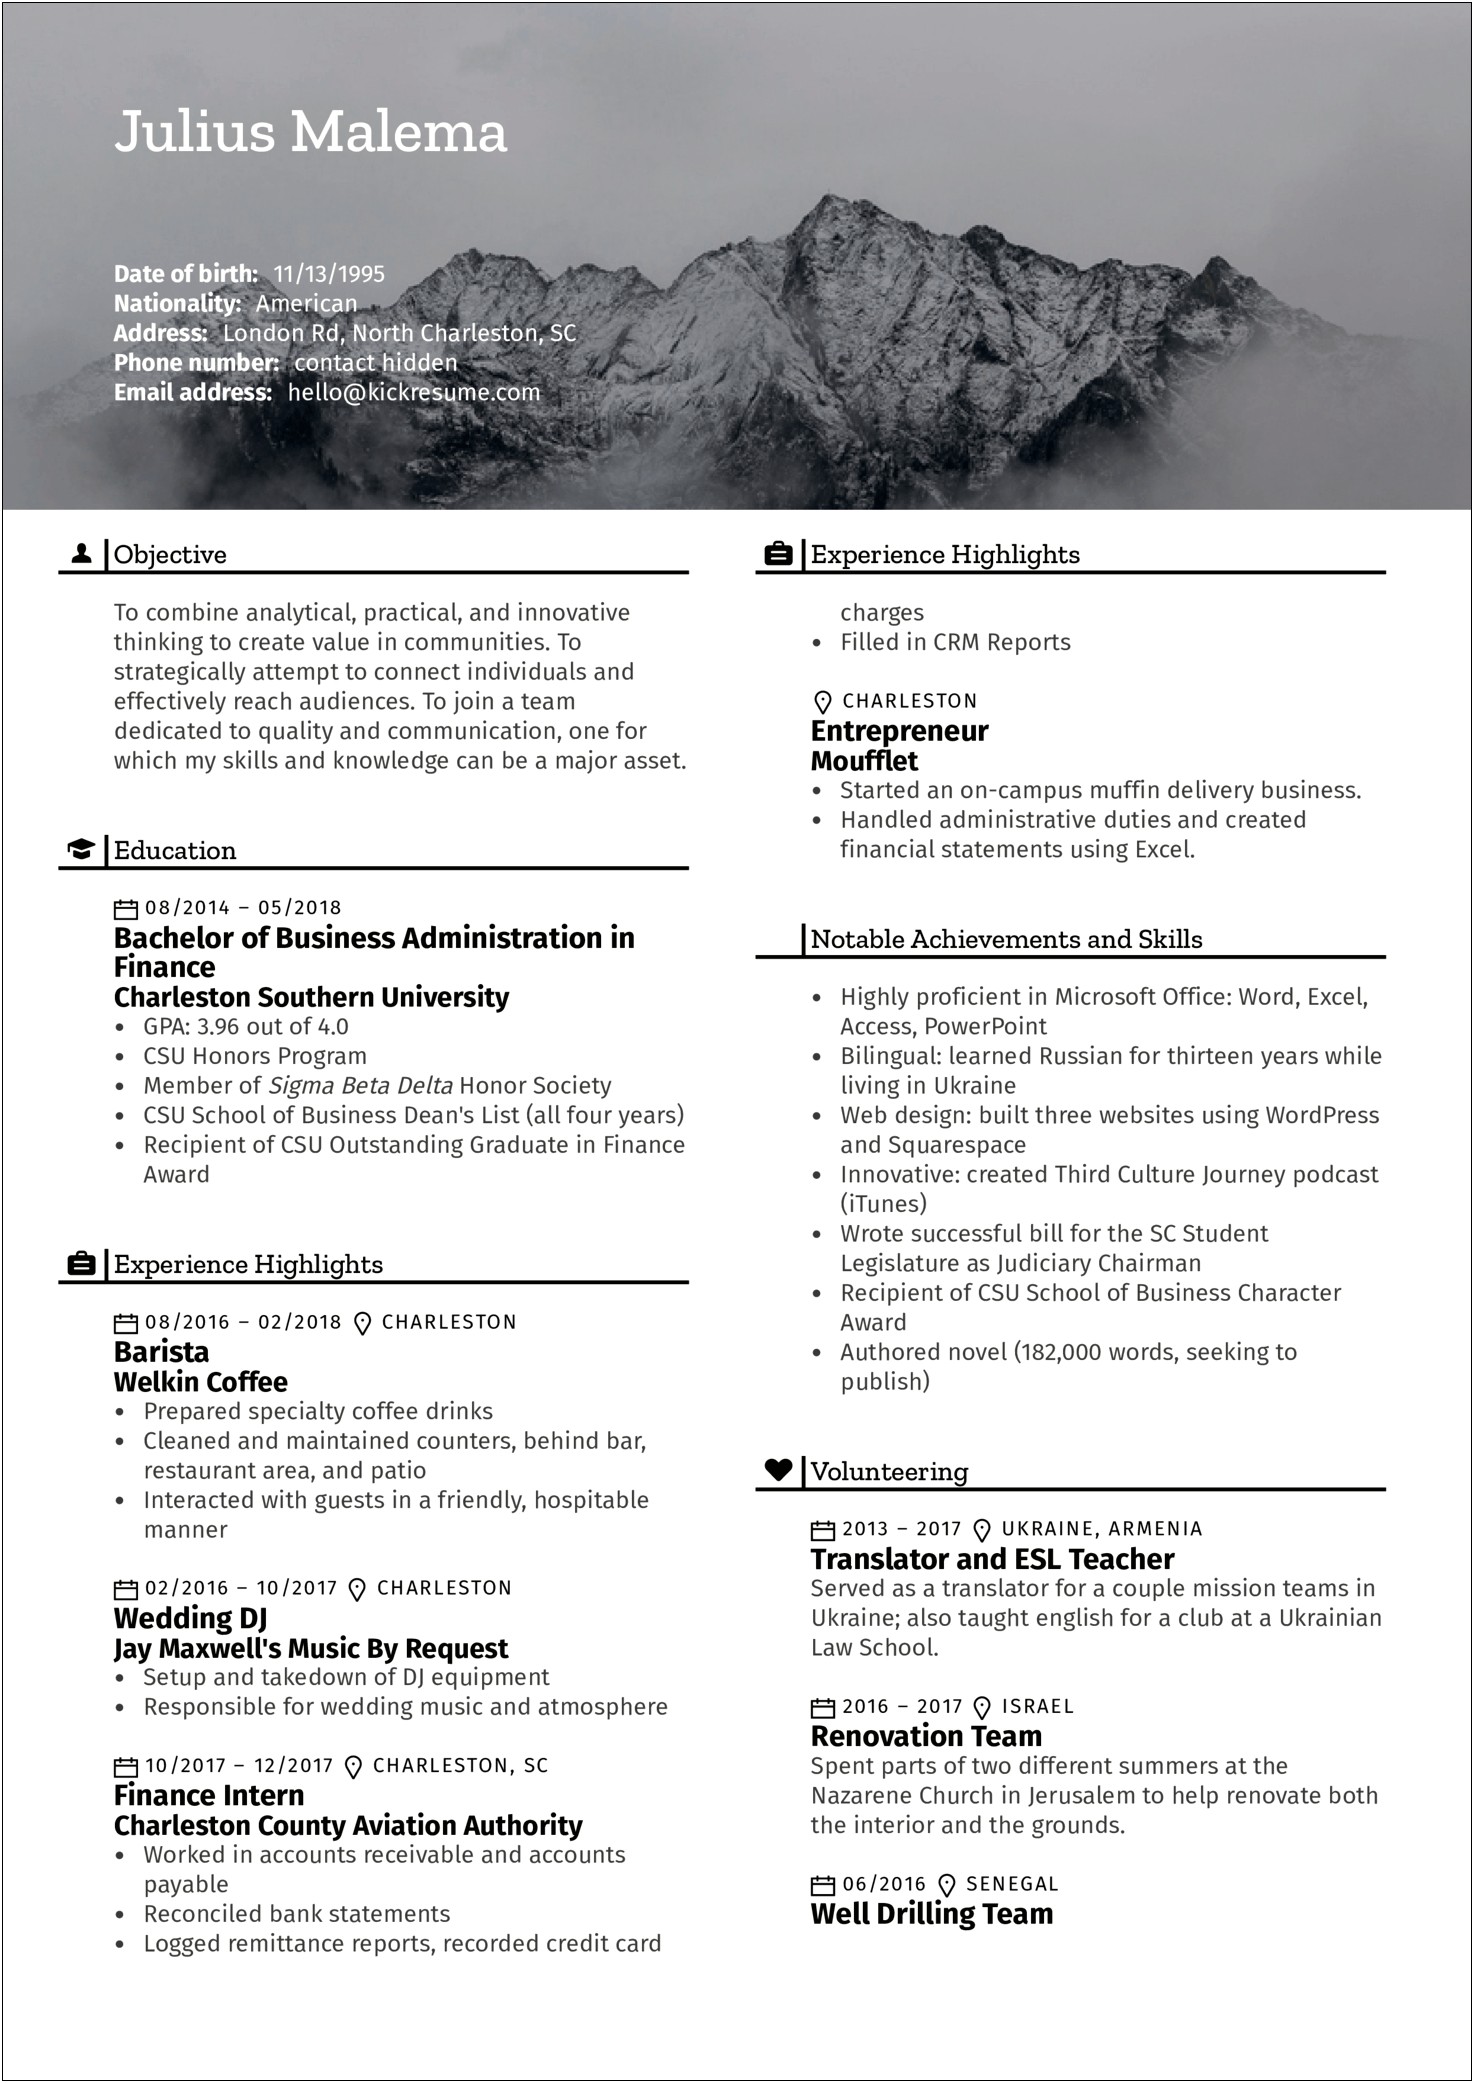 Sample Resume Format For Ojt Psychology Students